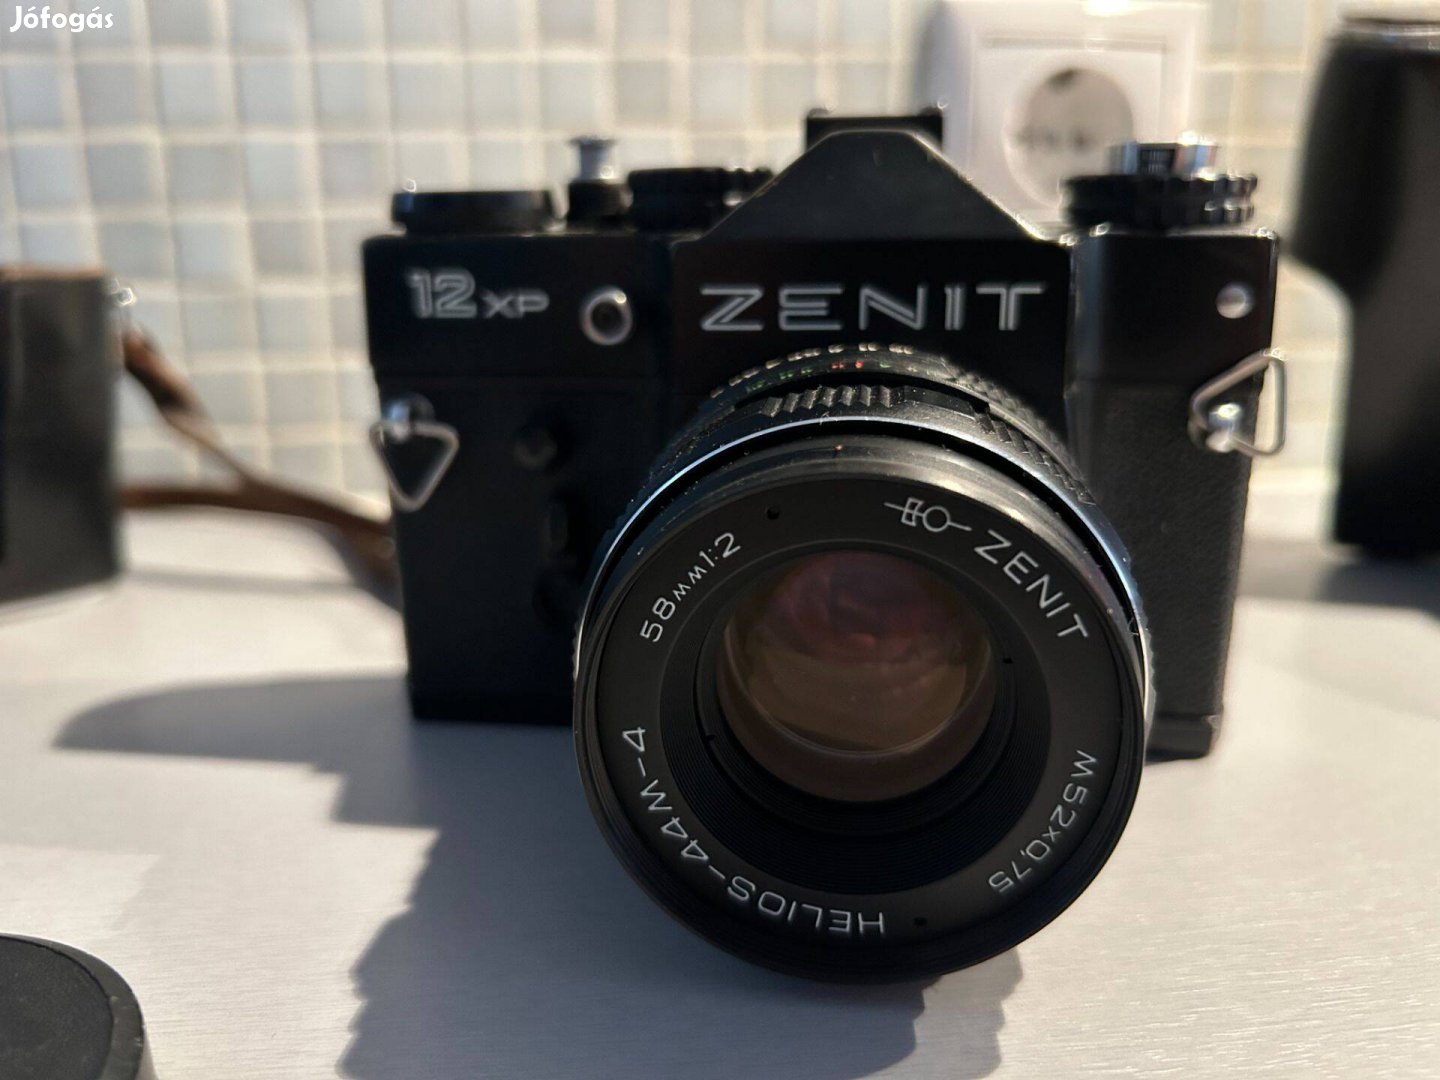 Eladó Zenit 12 xp kamera Helios 58mm objektív Vivitar vaku